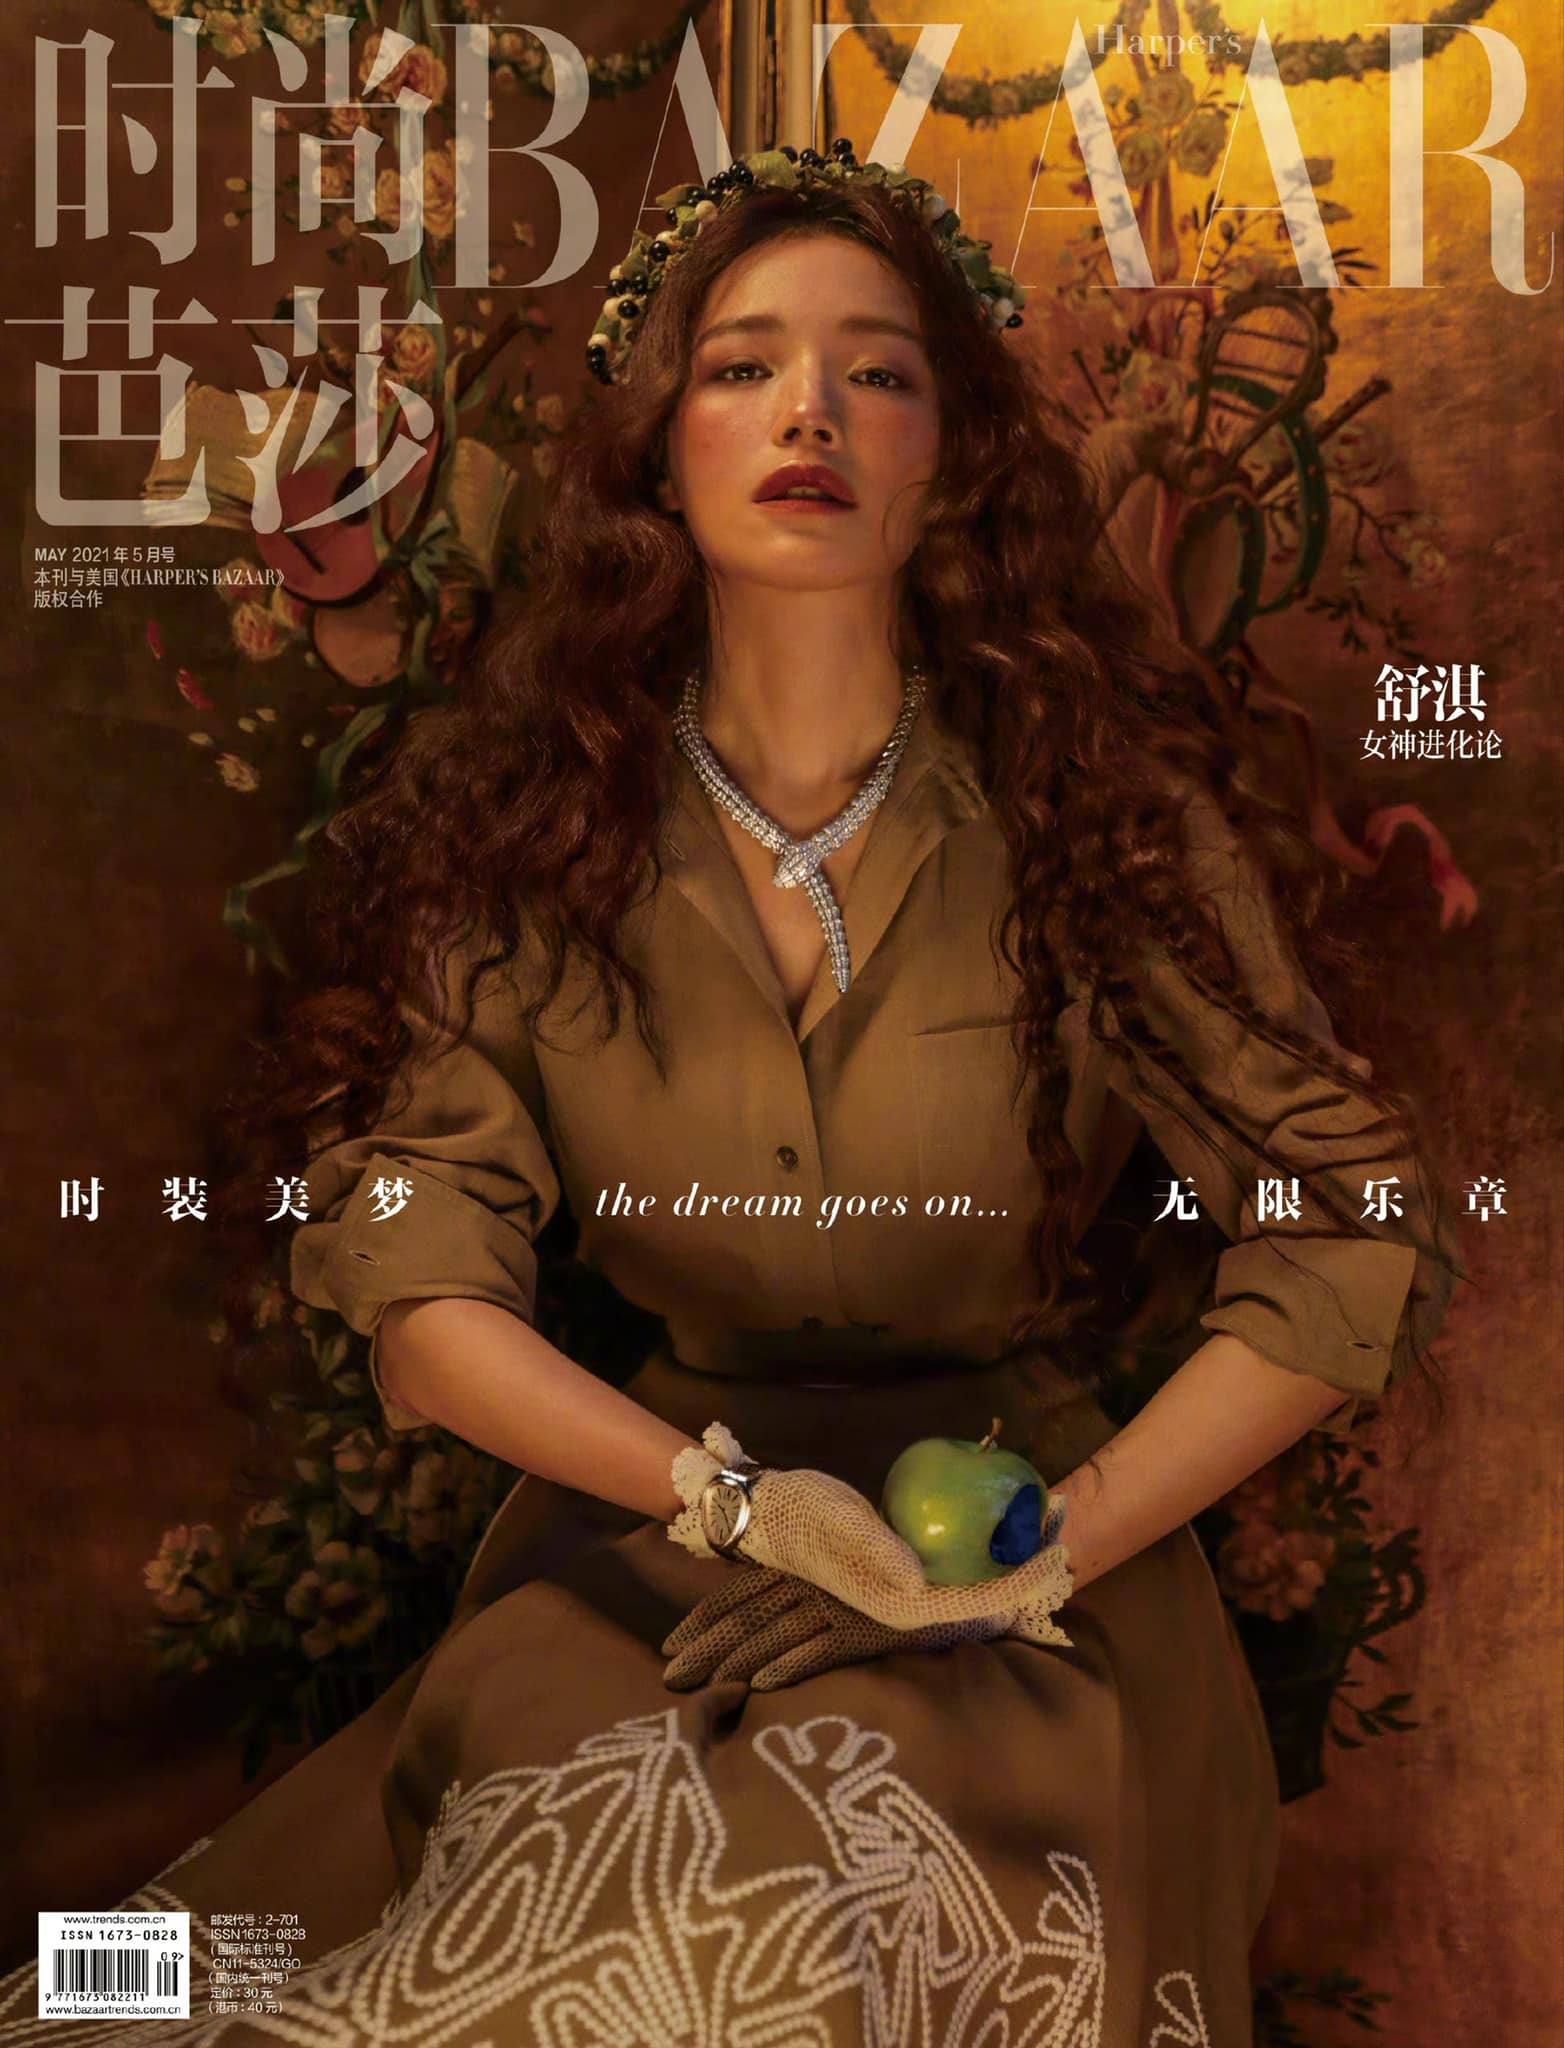 Thư Kỳ trở thành gương mặt trang bìa cho tạp chí Harper's Bazaar Trung Quốc số tháng 5.